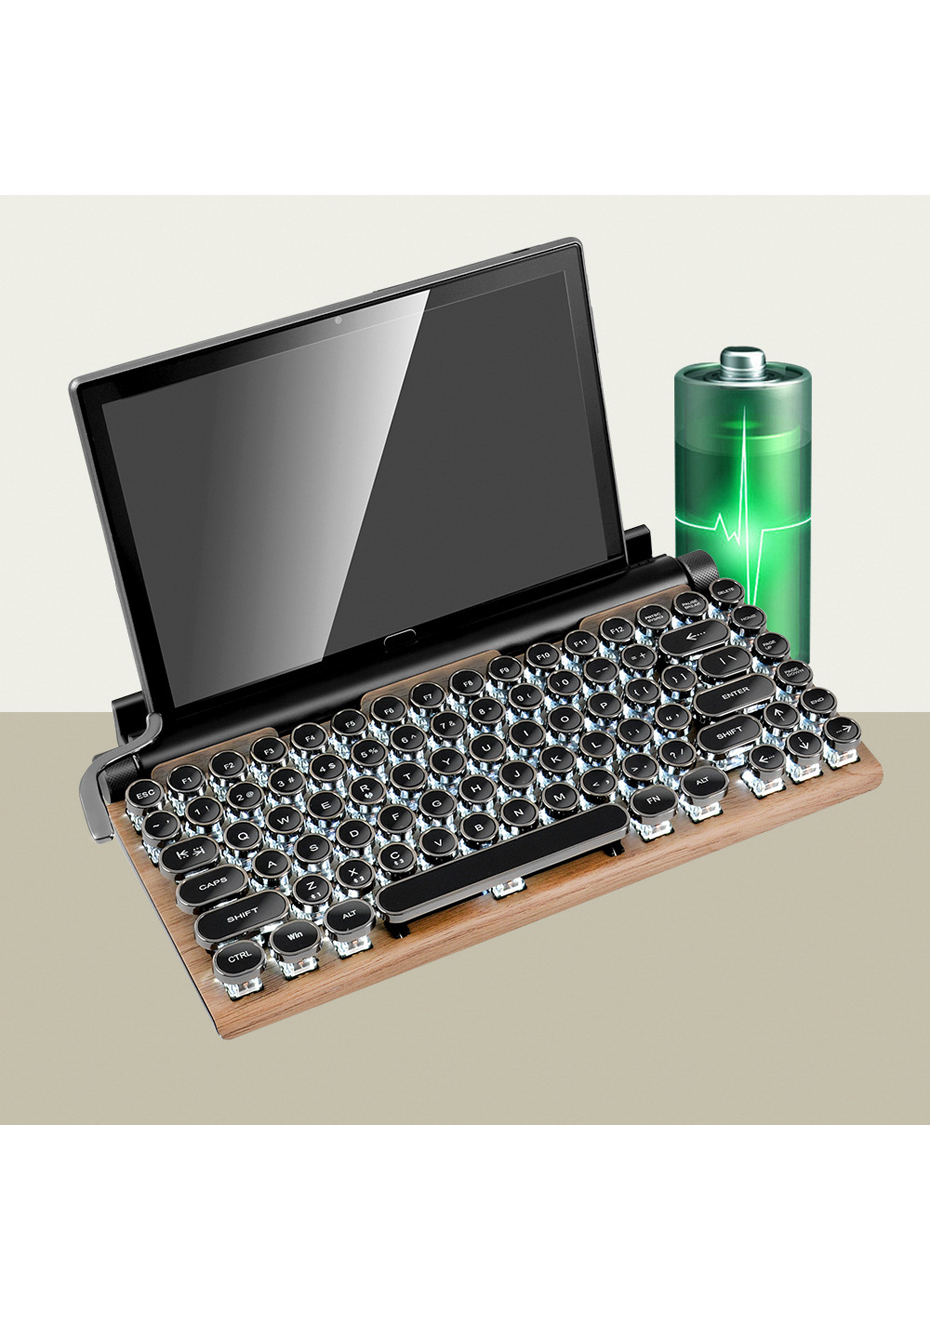 mechanical typewriter keyboard bluetooth retrofit kit